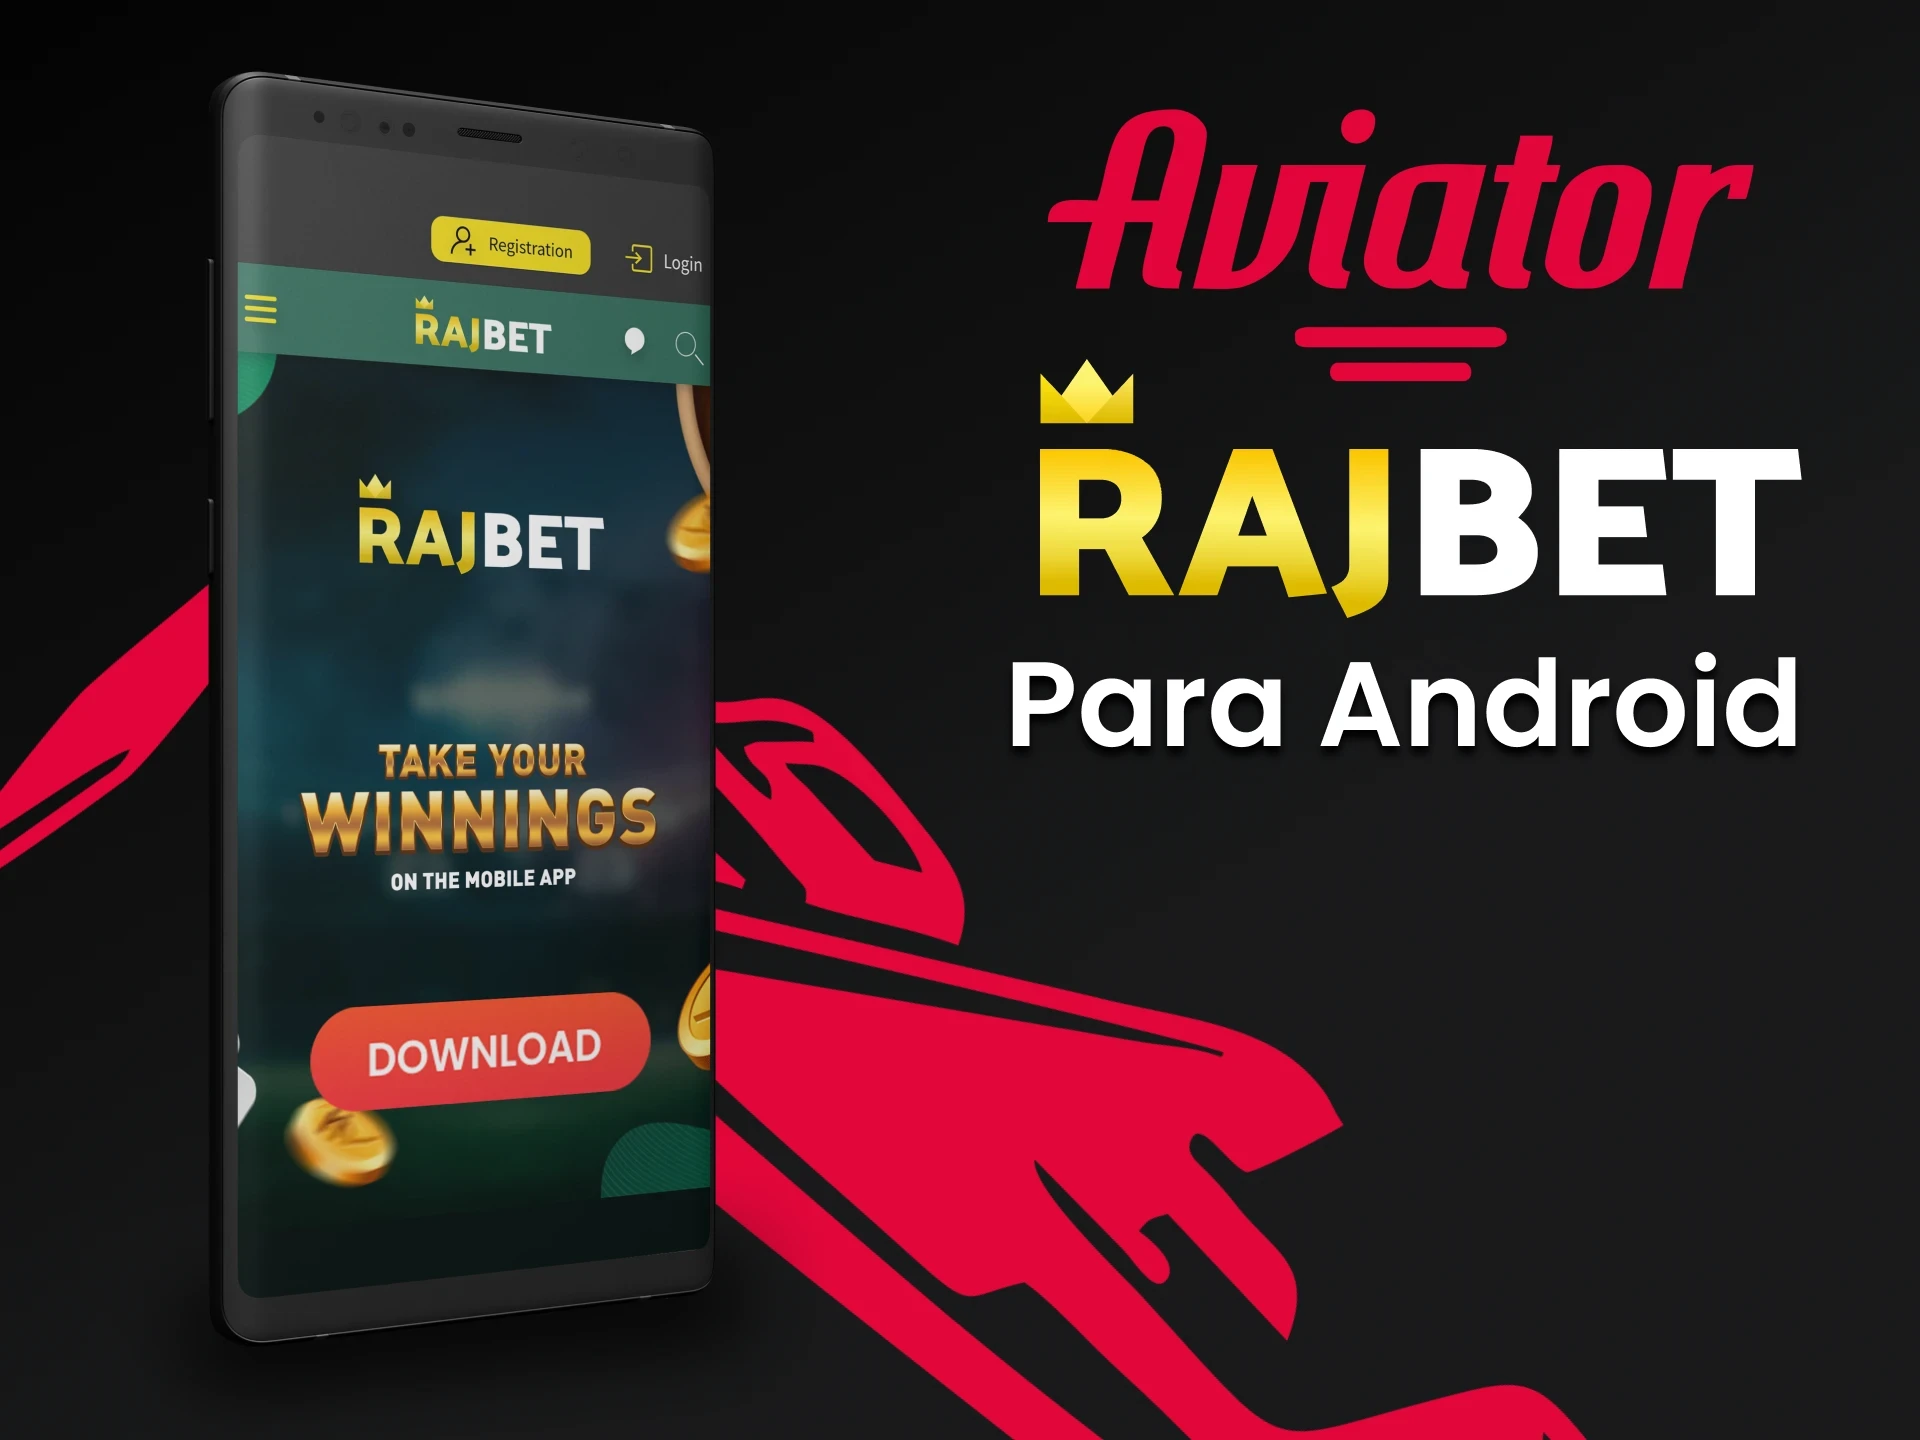 Baixe o aplicativo Rajbet para Android para Aviator.